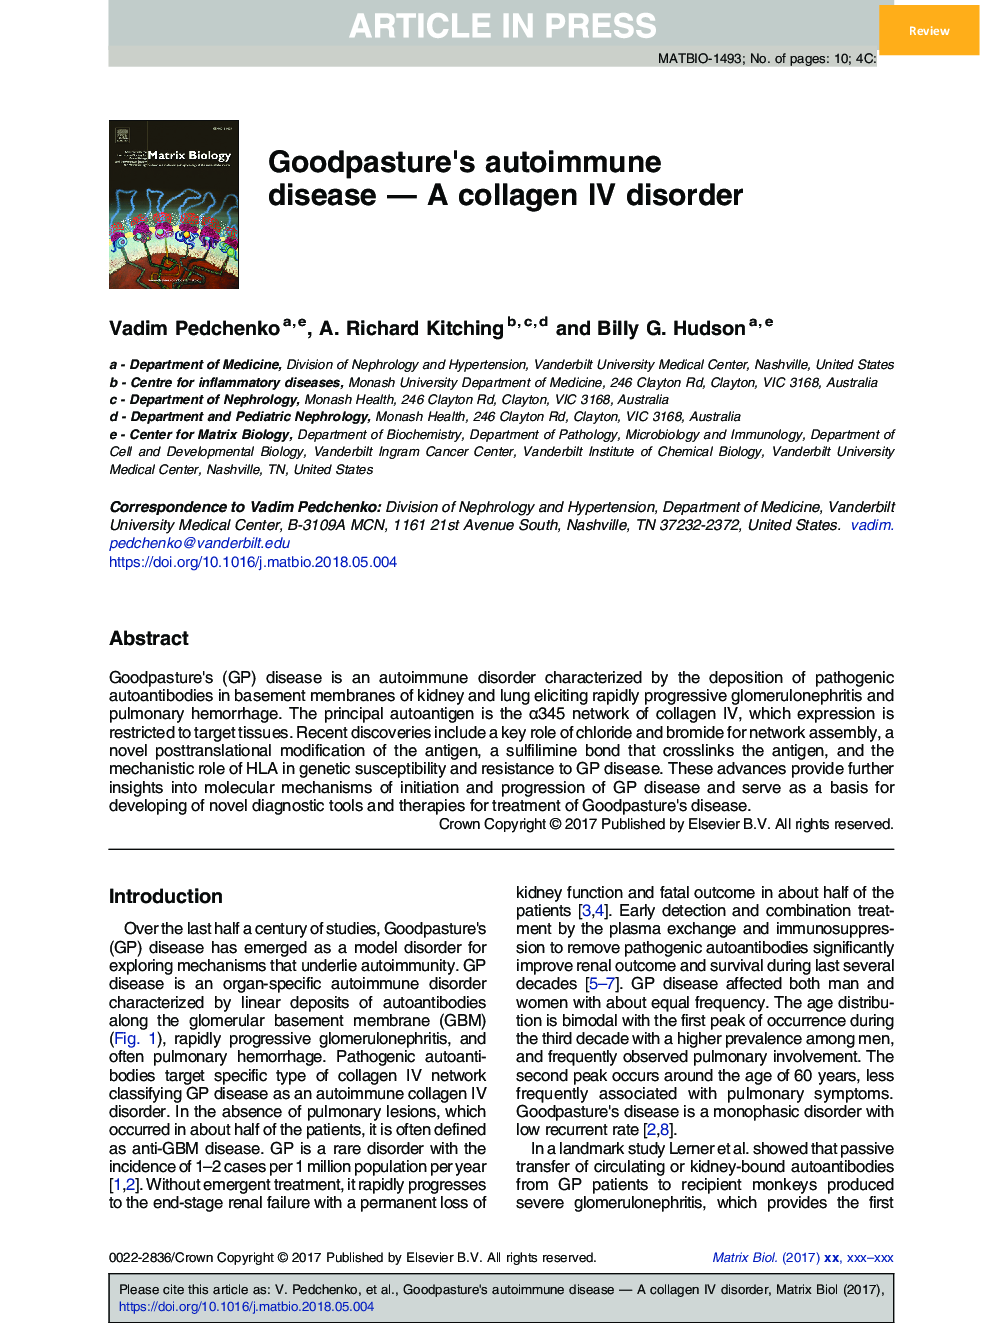 Goodpasture's autoimmune disease - A collagen IV disorder